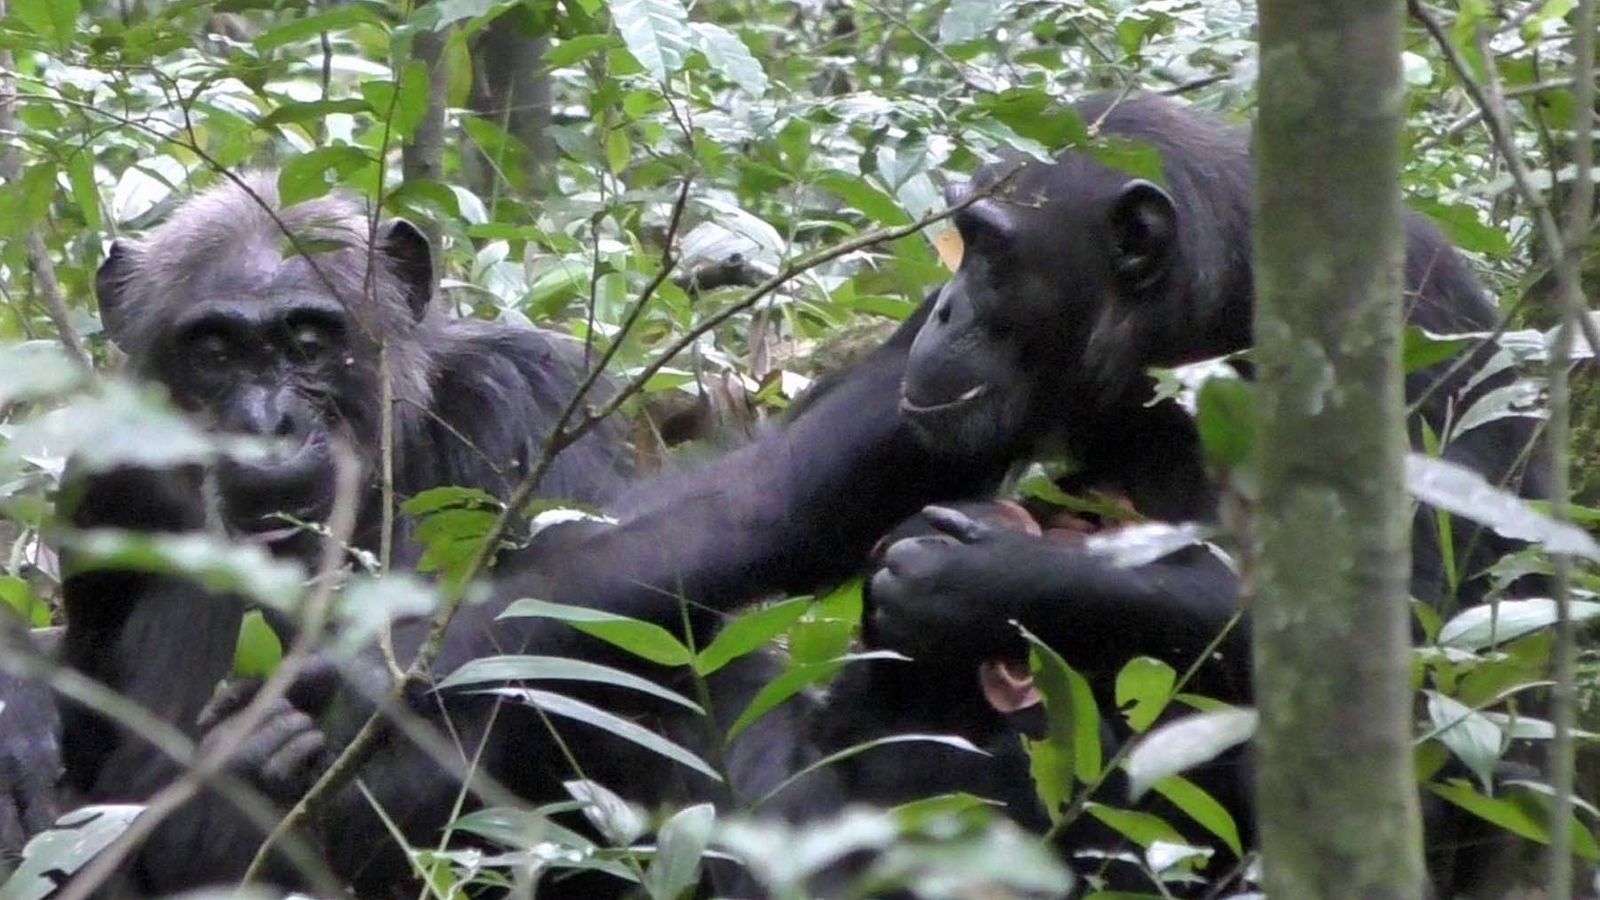 Şempanzeler bir nesneyi paylaşıyor – insanlara özgü olduğunu düşündükleri davranışları gösteriyor |  Dünya Haberleri